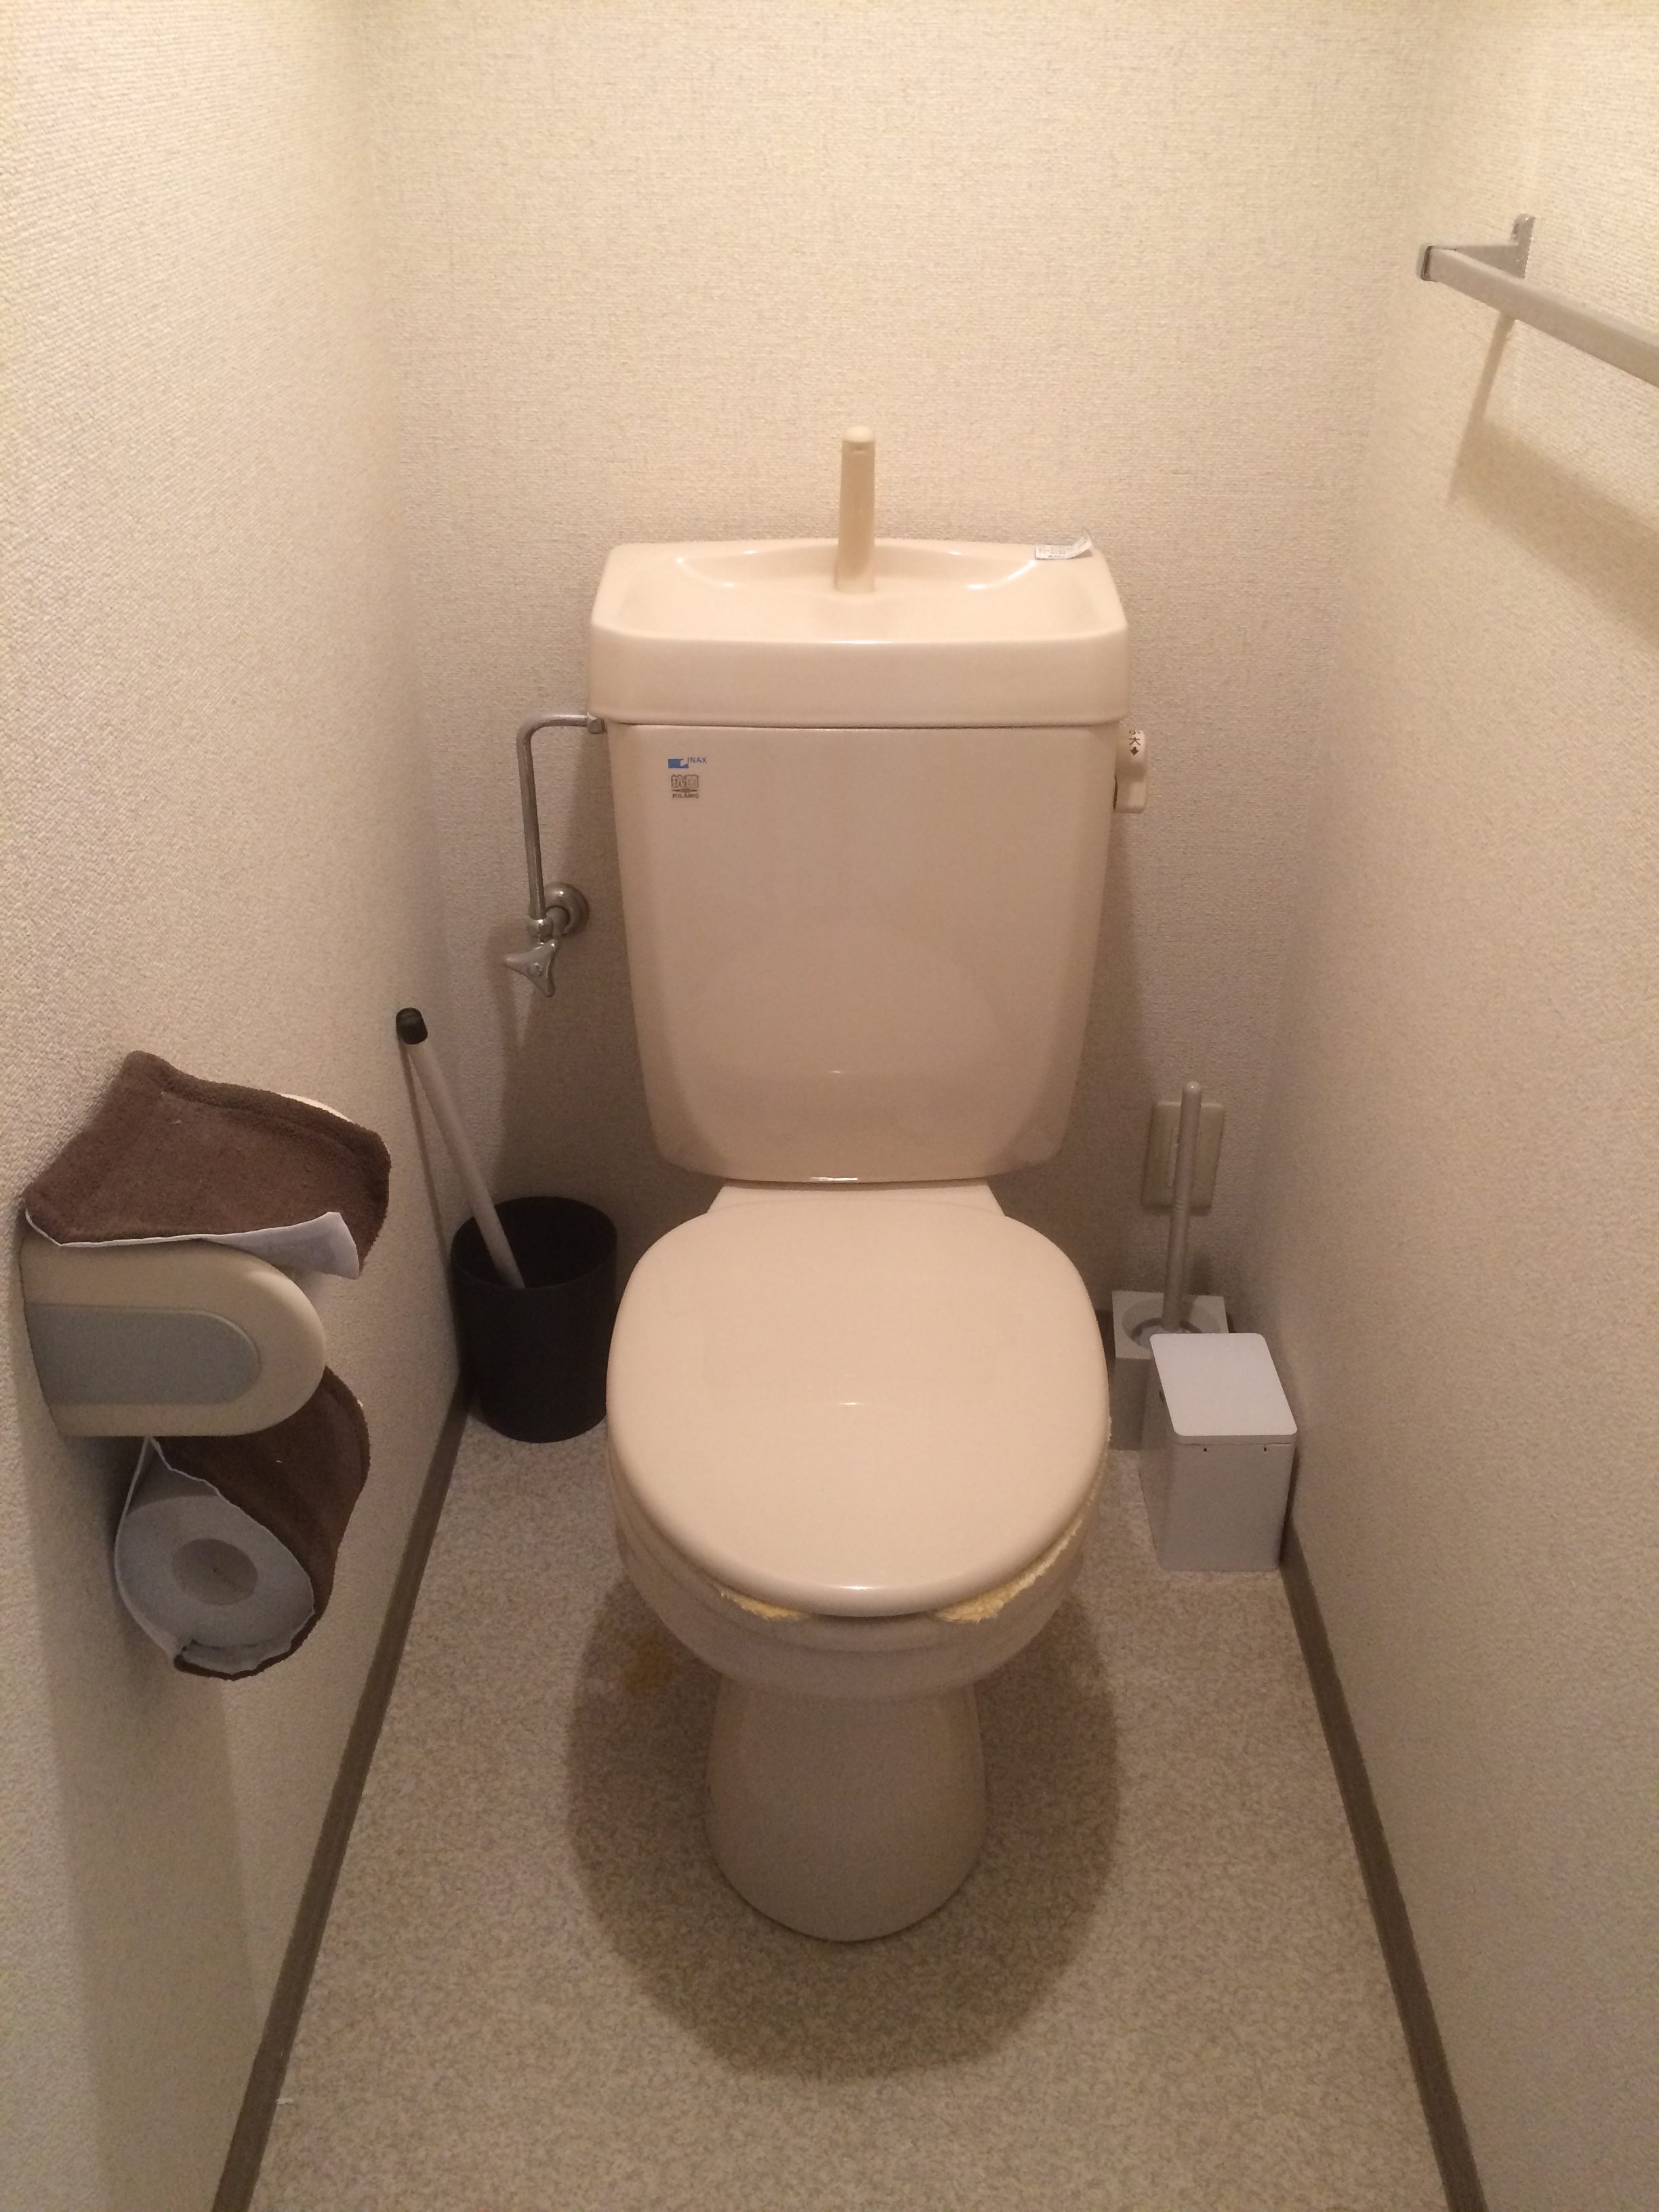 アパートのトイレにウォシュレットを導入 東芝scs T160レビュー さいちゃんちの家事ログ